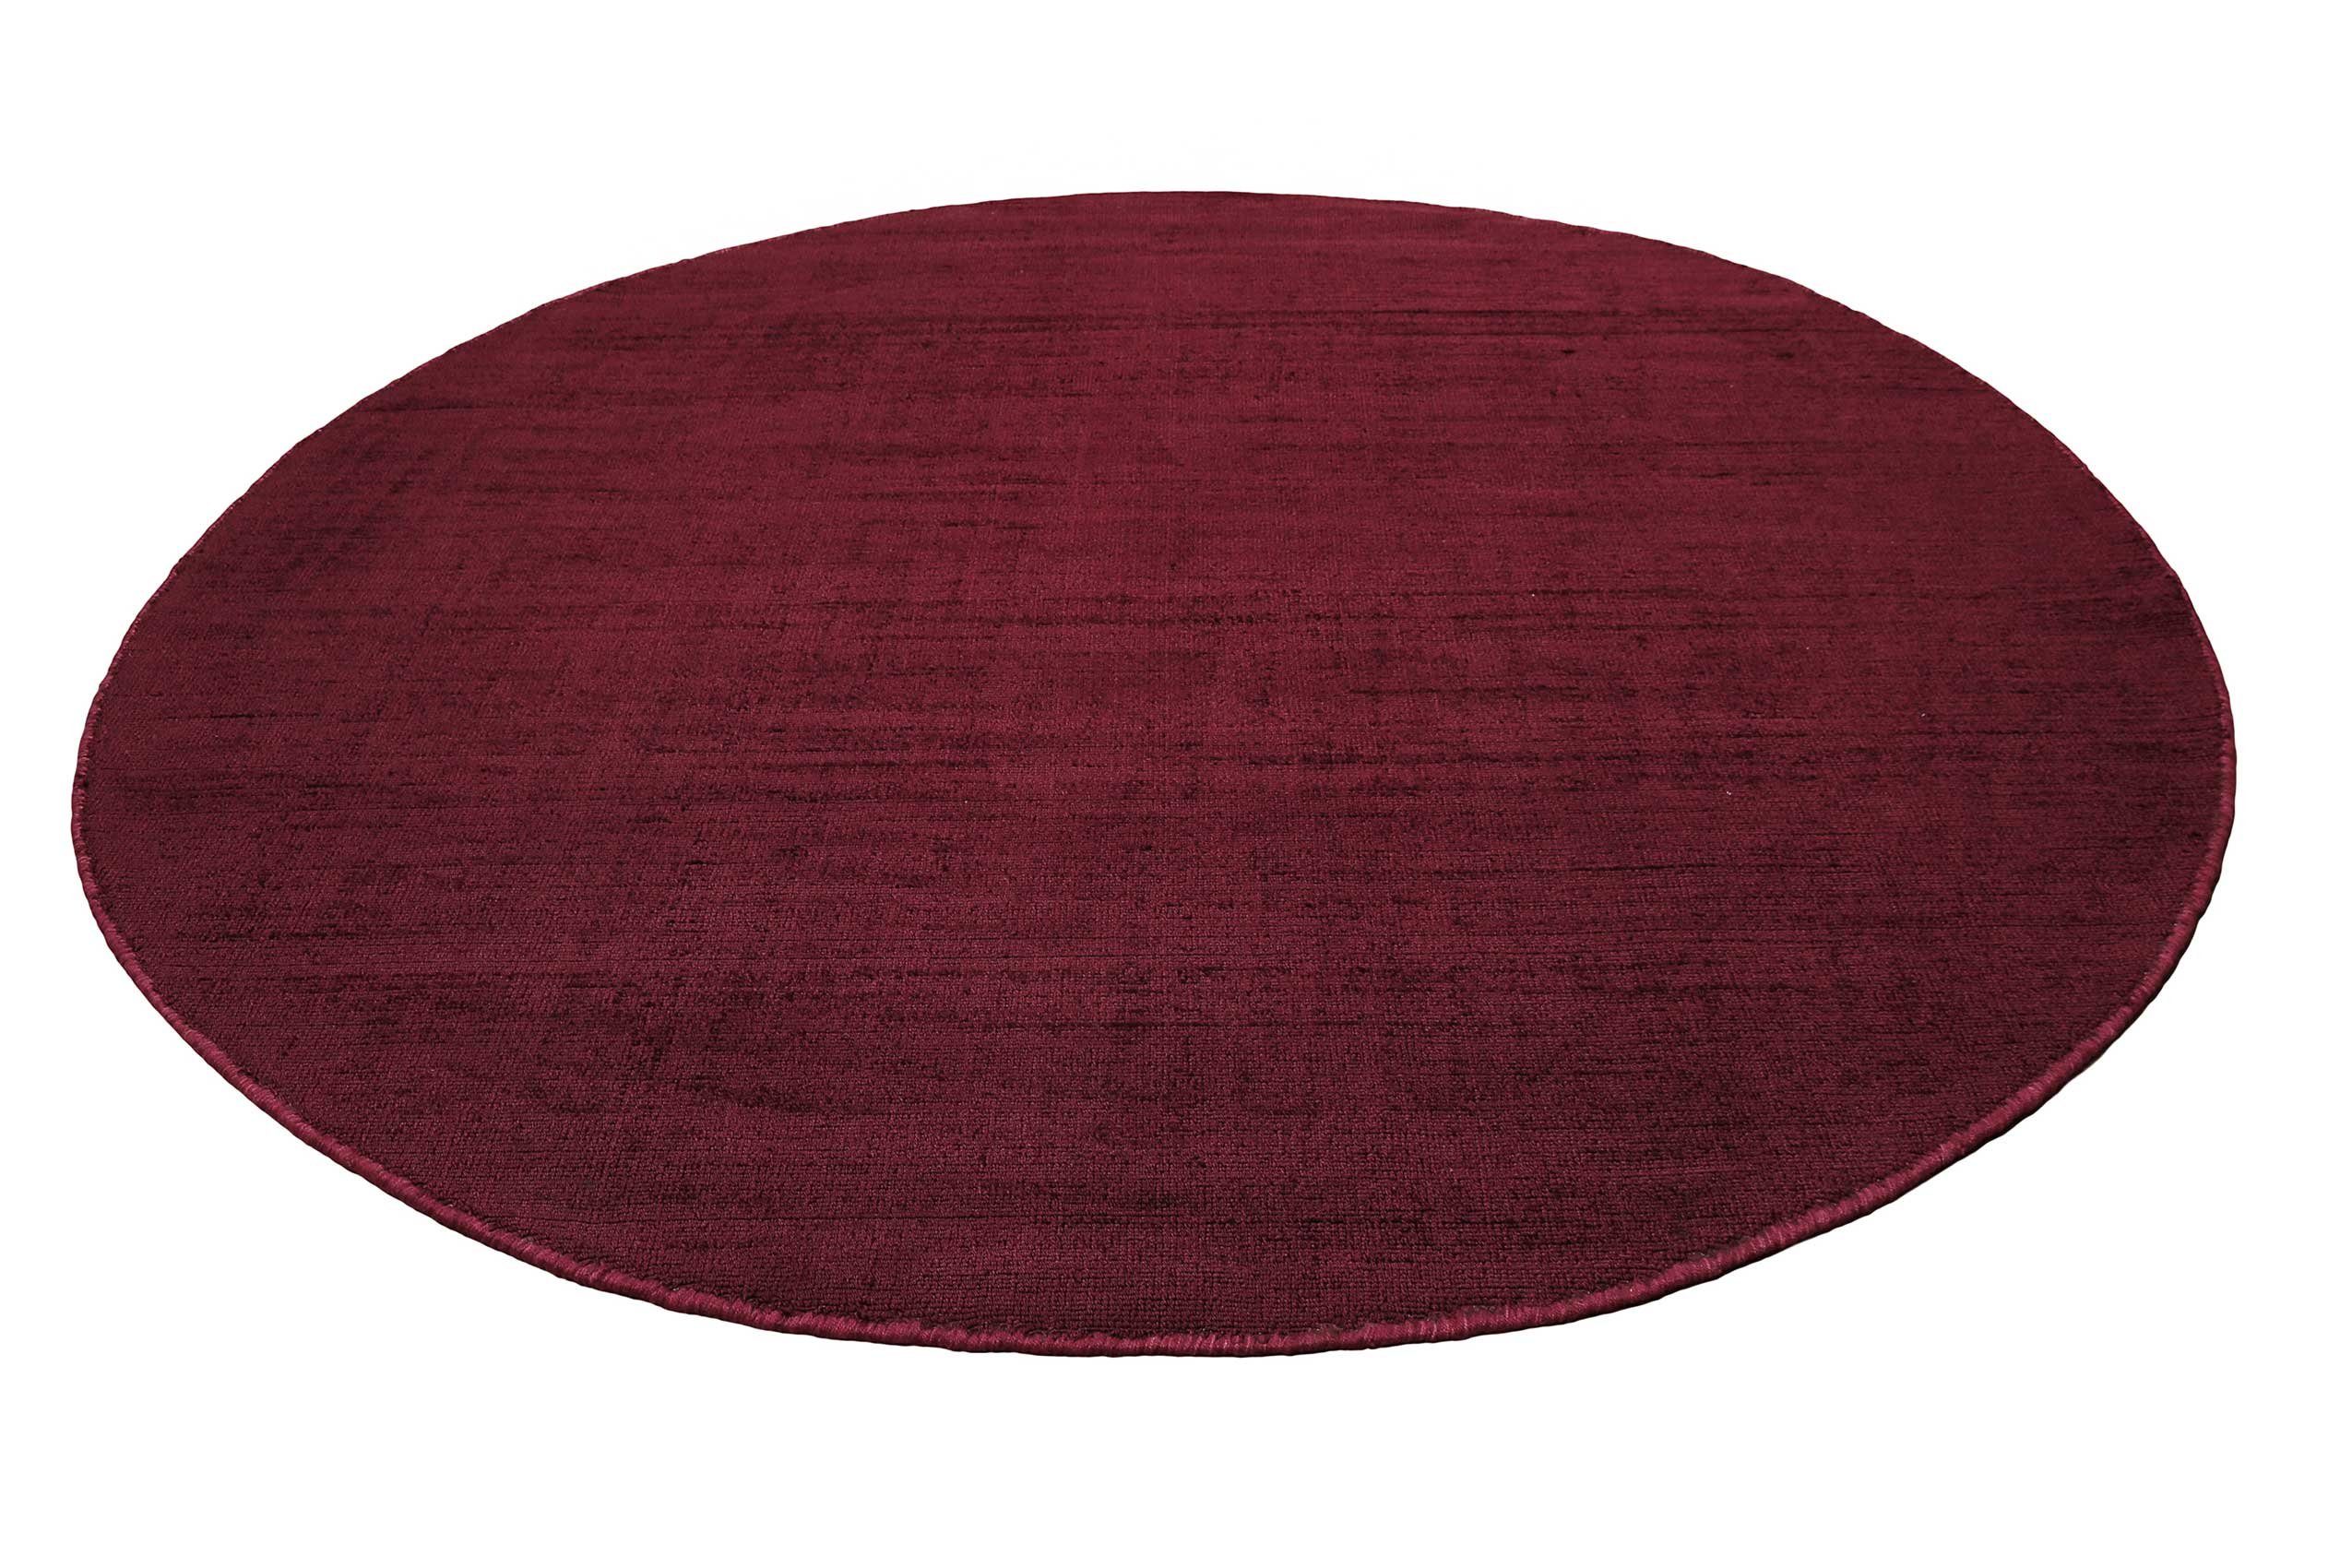 Teppich Gil, Esprit, rund, Höhe: 8 mm, handgewebt, seidig glänzend, schimmernde Farbbrillianz, Melangeeffekt bordeaux rot